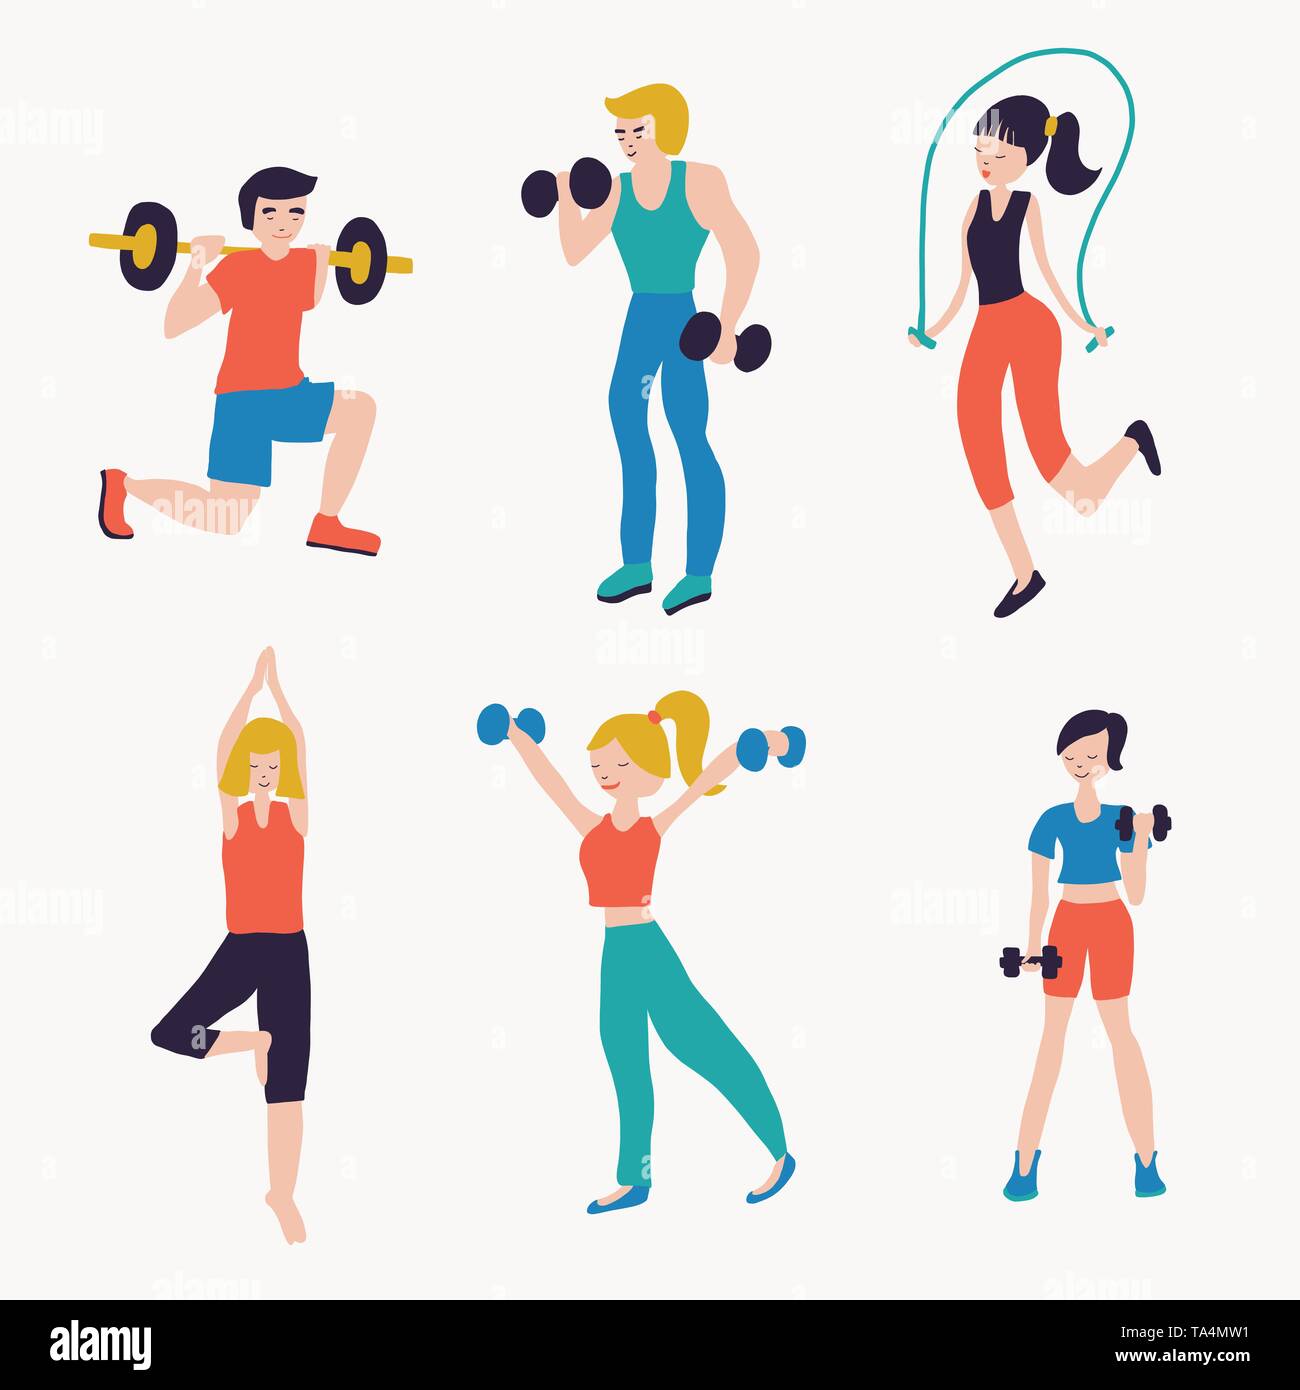 Personaje femenino participar en actividades deportivas hacer ejercicios  fitness entrenamiento correr saltar en la cuerda estilo de vida saludable  ocio dibujos animados plano vector ilustración aislado sobre fondo blanco